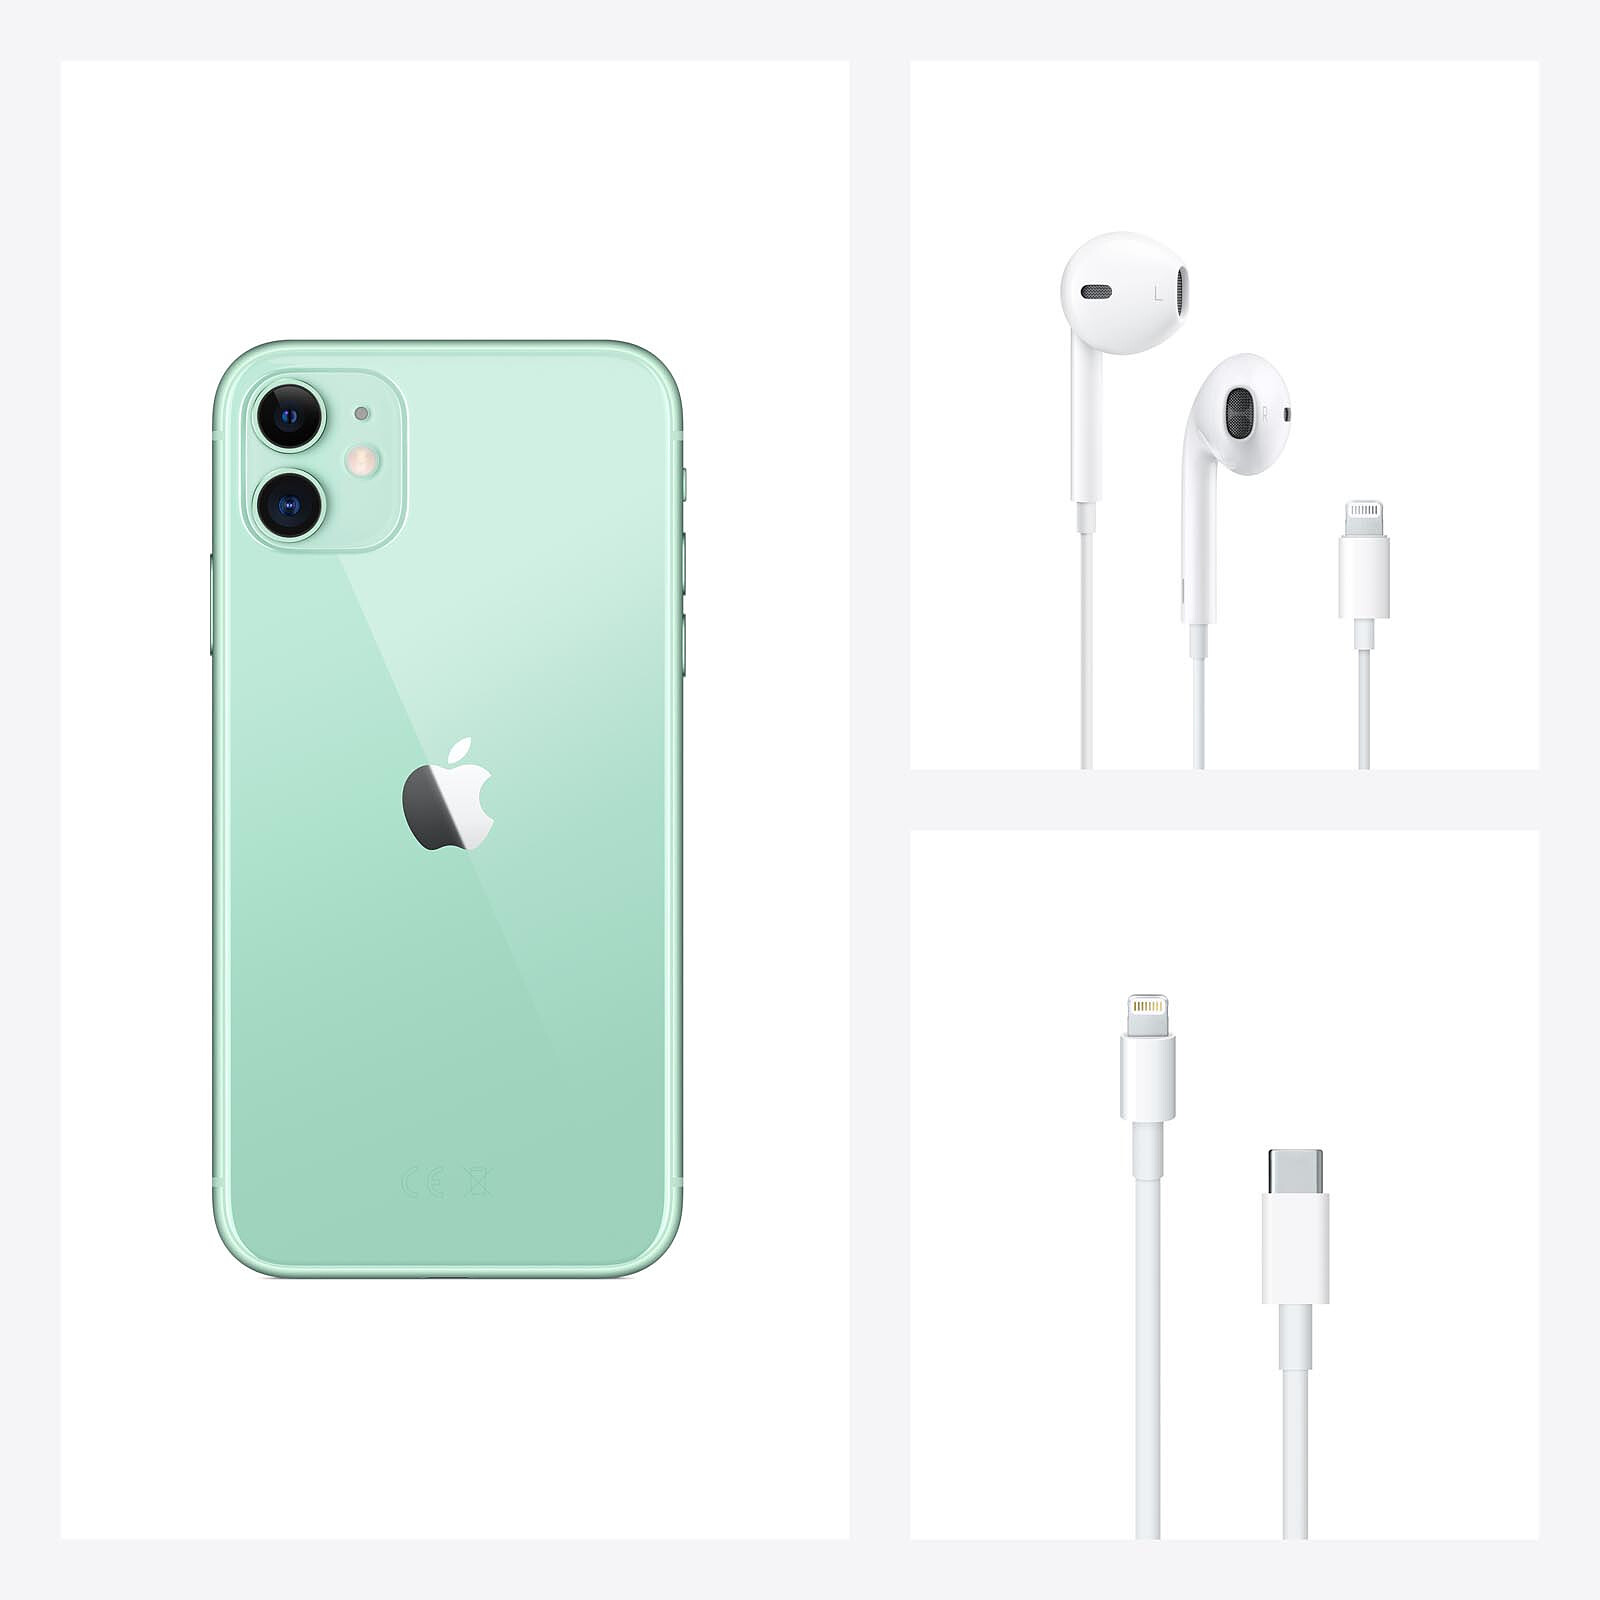 Apple iPhone 11 256GB Verde - Móvil y smartphone - LDLC